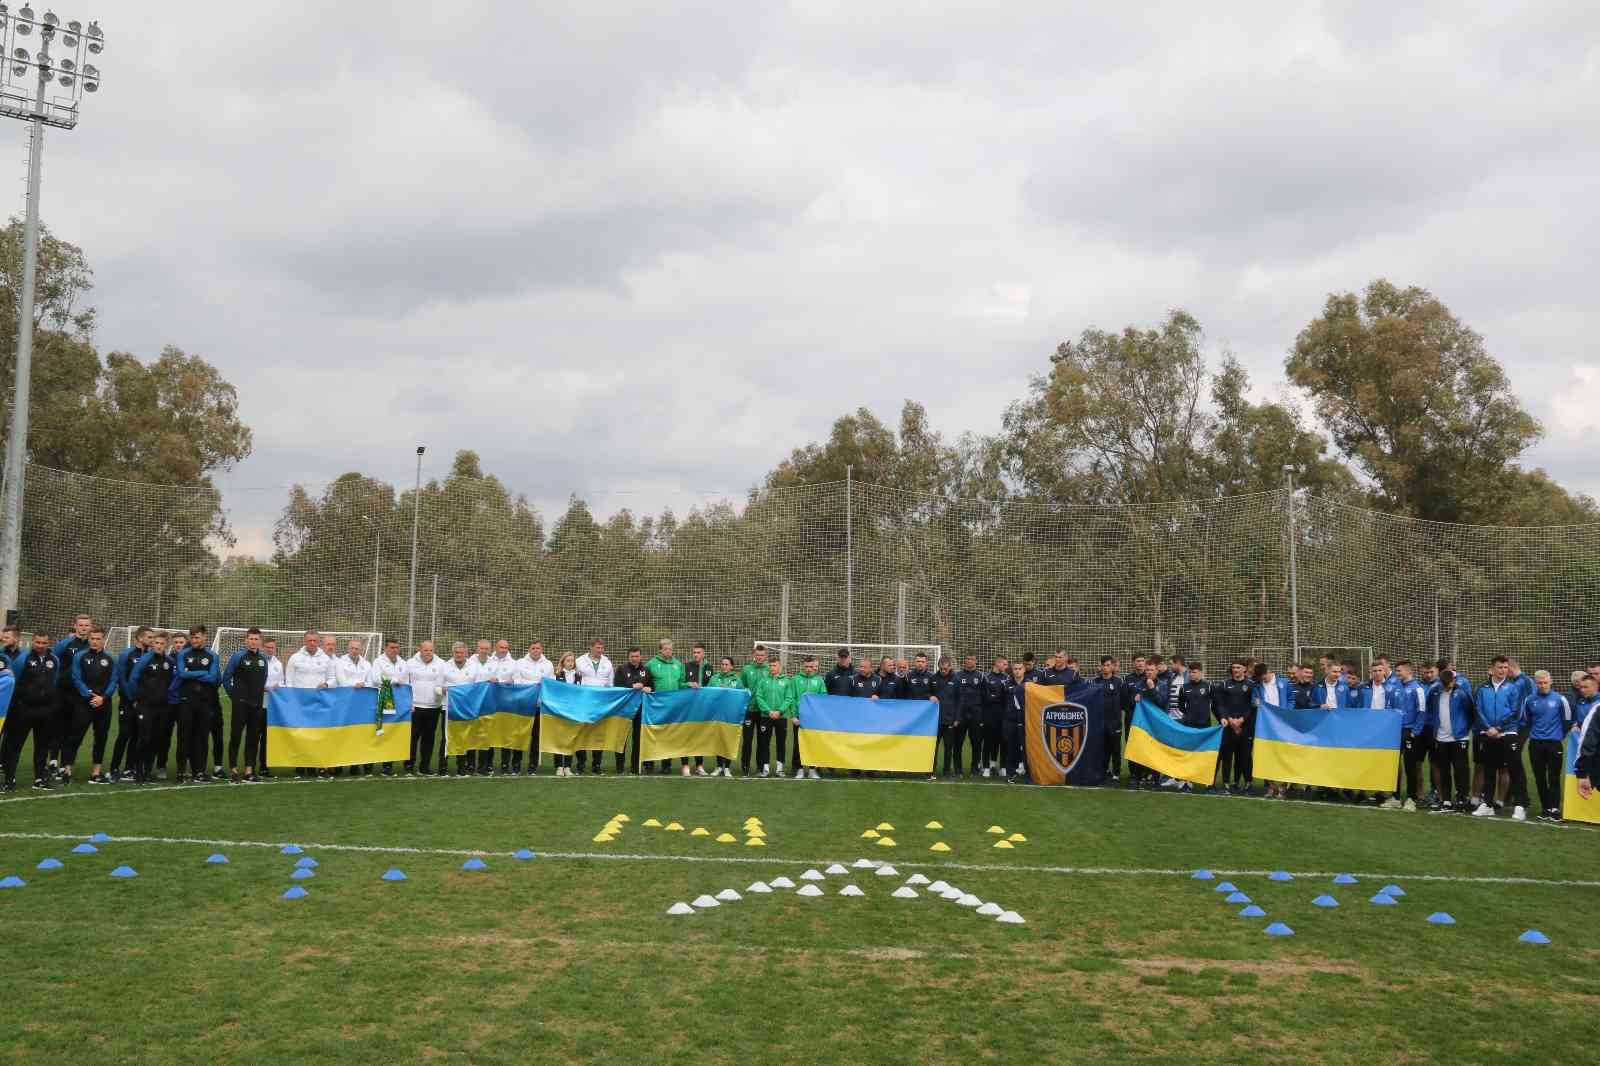 Antalya’da kamp yapan Ukraynalı 7 takımın futbolcularından yeşil sahada ’Savaşa hayır’ mesajı #antalya